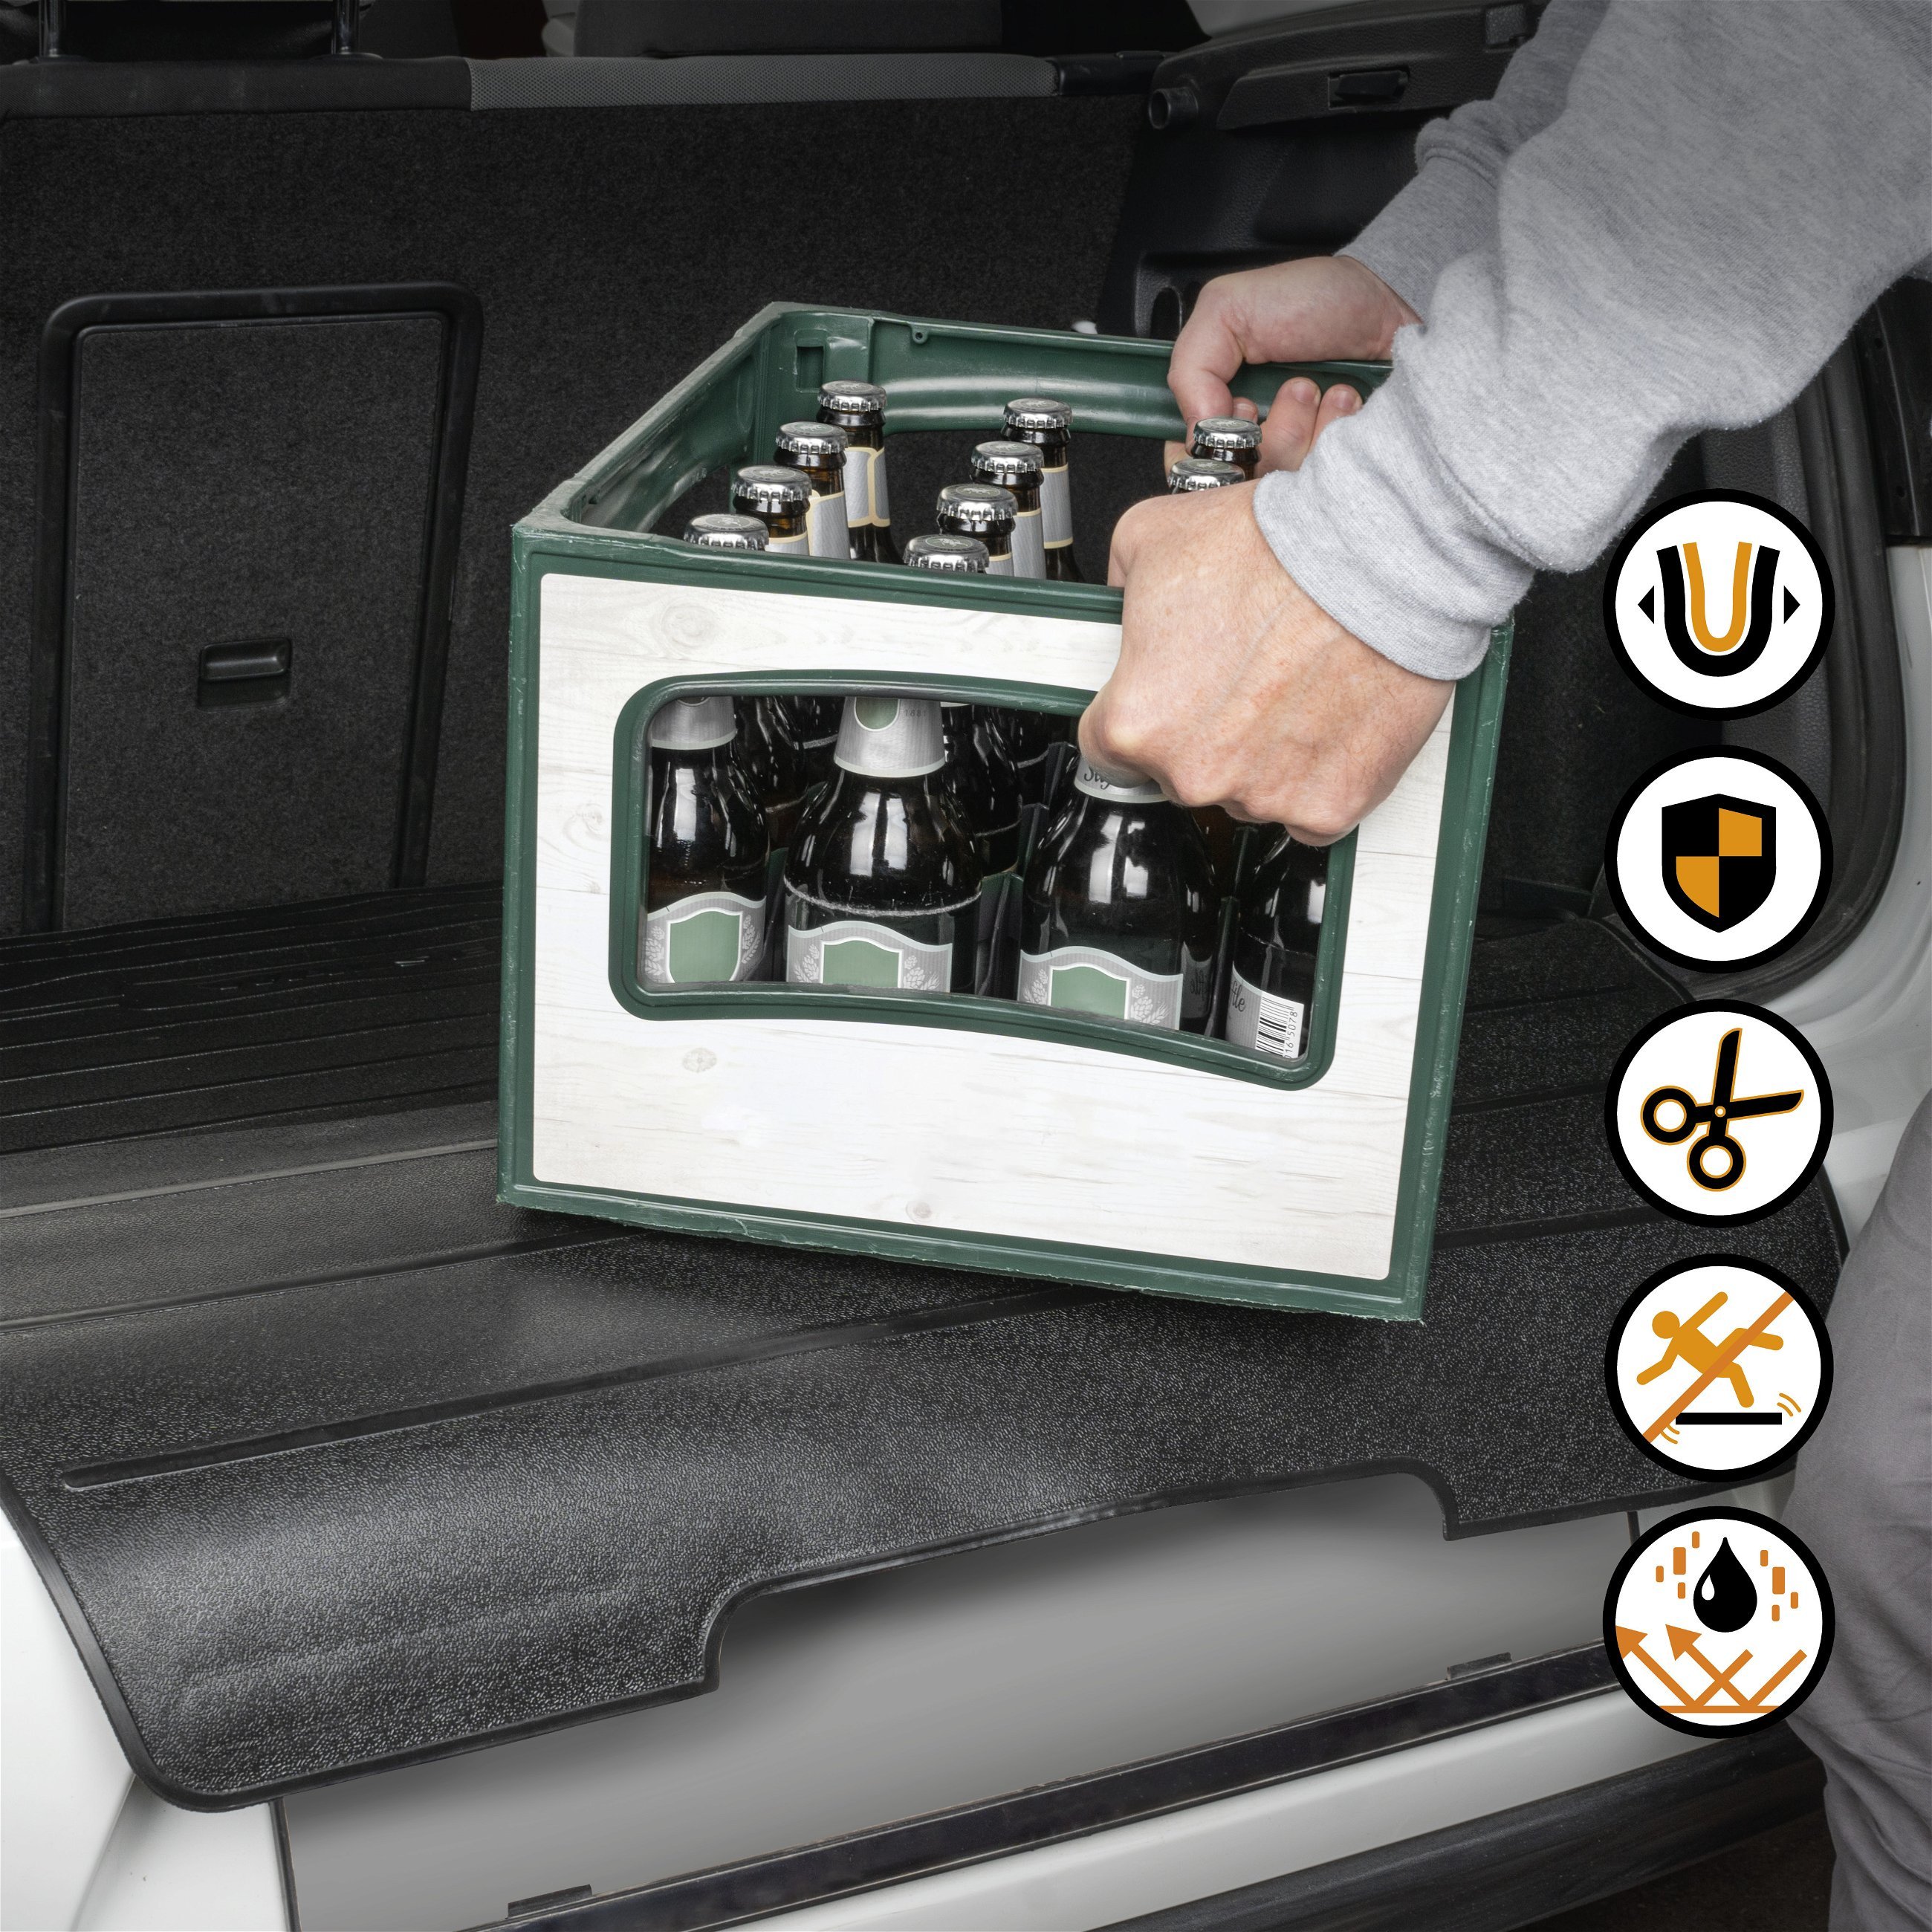 Tapis de coffre Bootguard avec protection du seuil de chargement, bac de coffre découpable avec protection de pare-chocs 120x76+39cm